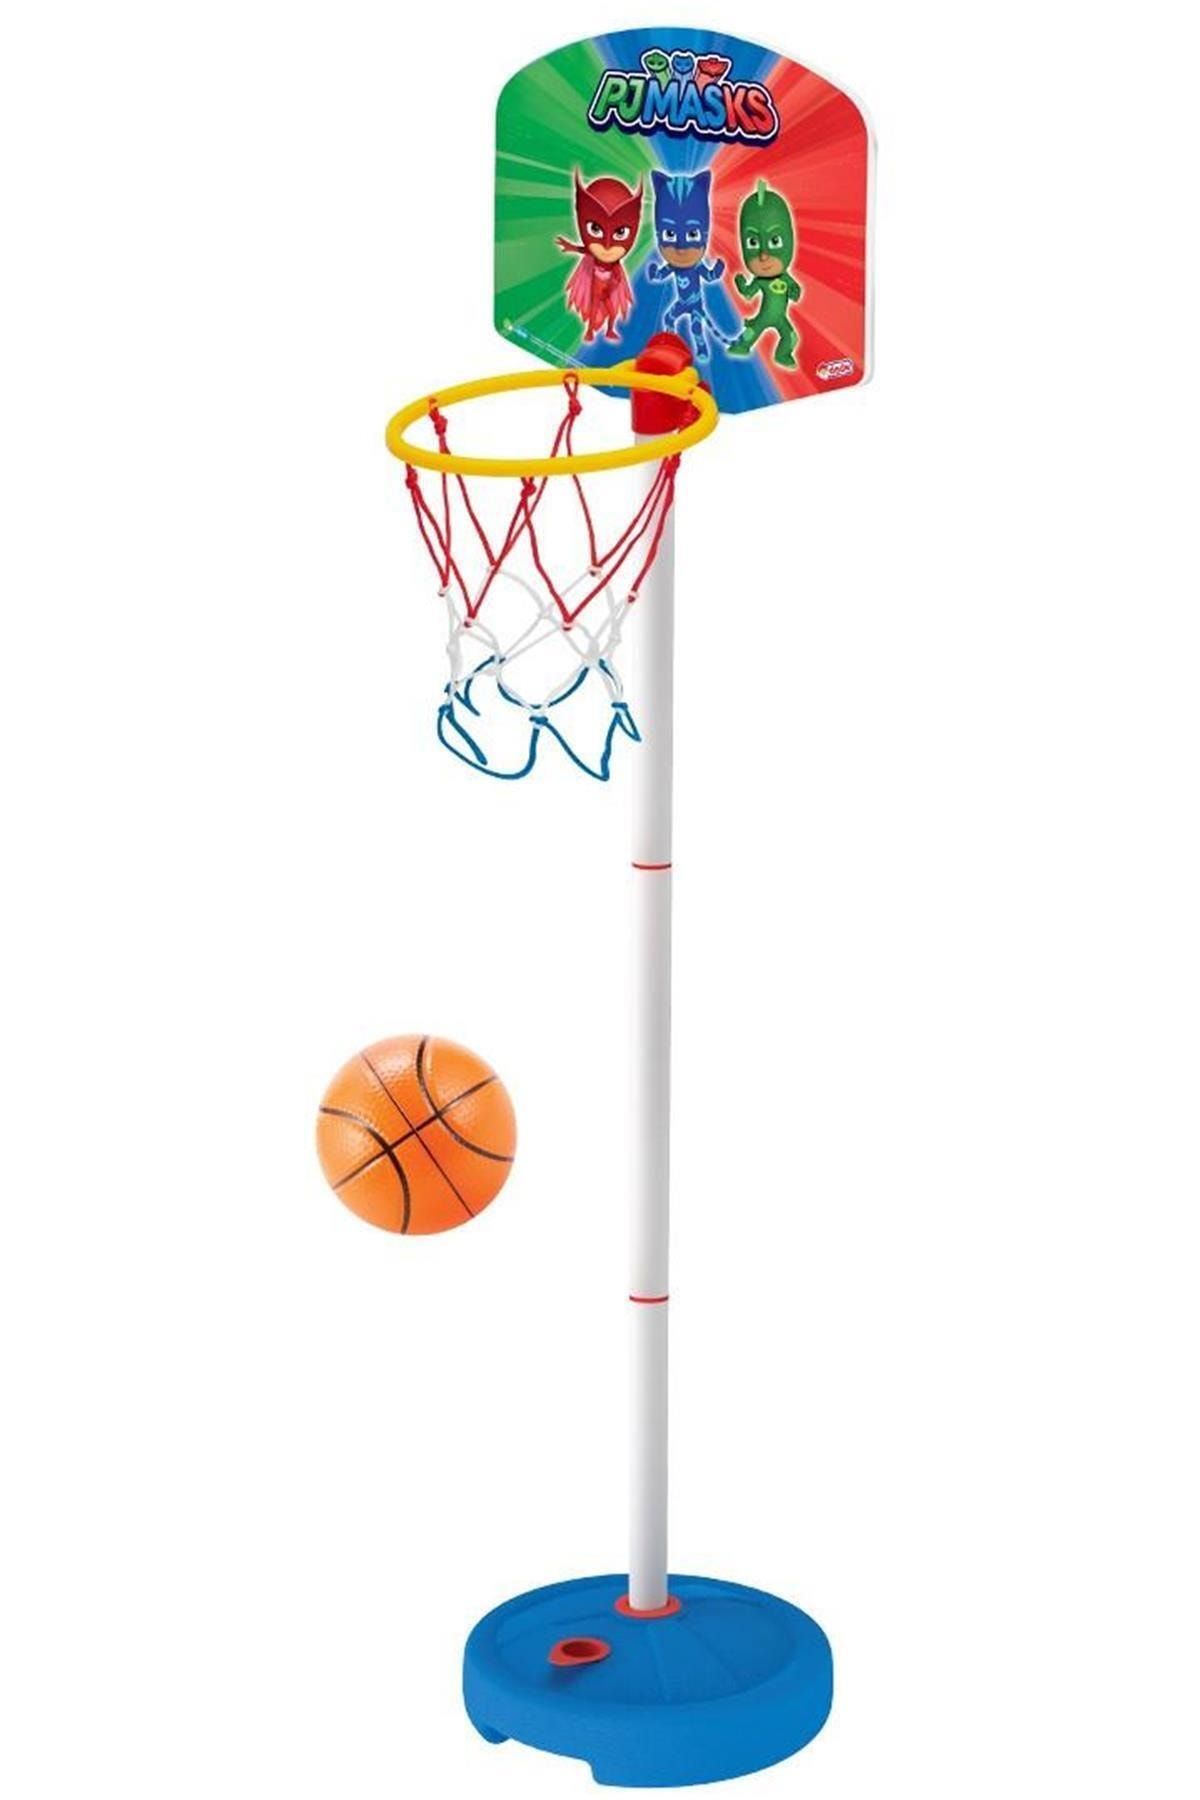 DEDE Marka: Pjmasks Küçük Ayaklı Basketbol Potası Kategori: Basketbol Potası Klbkshp121882